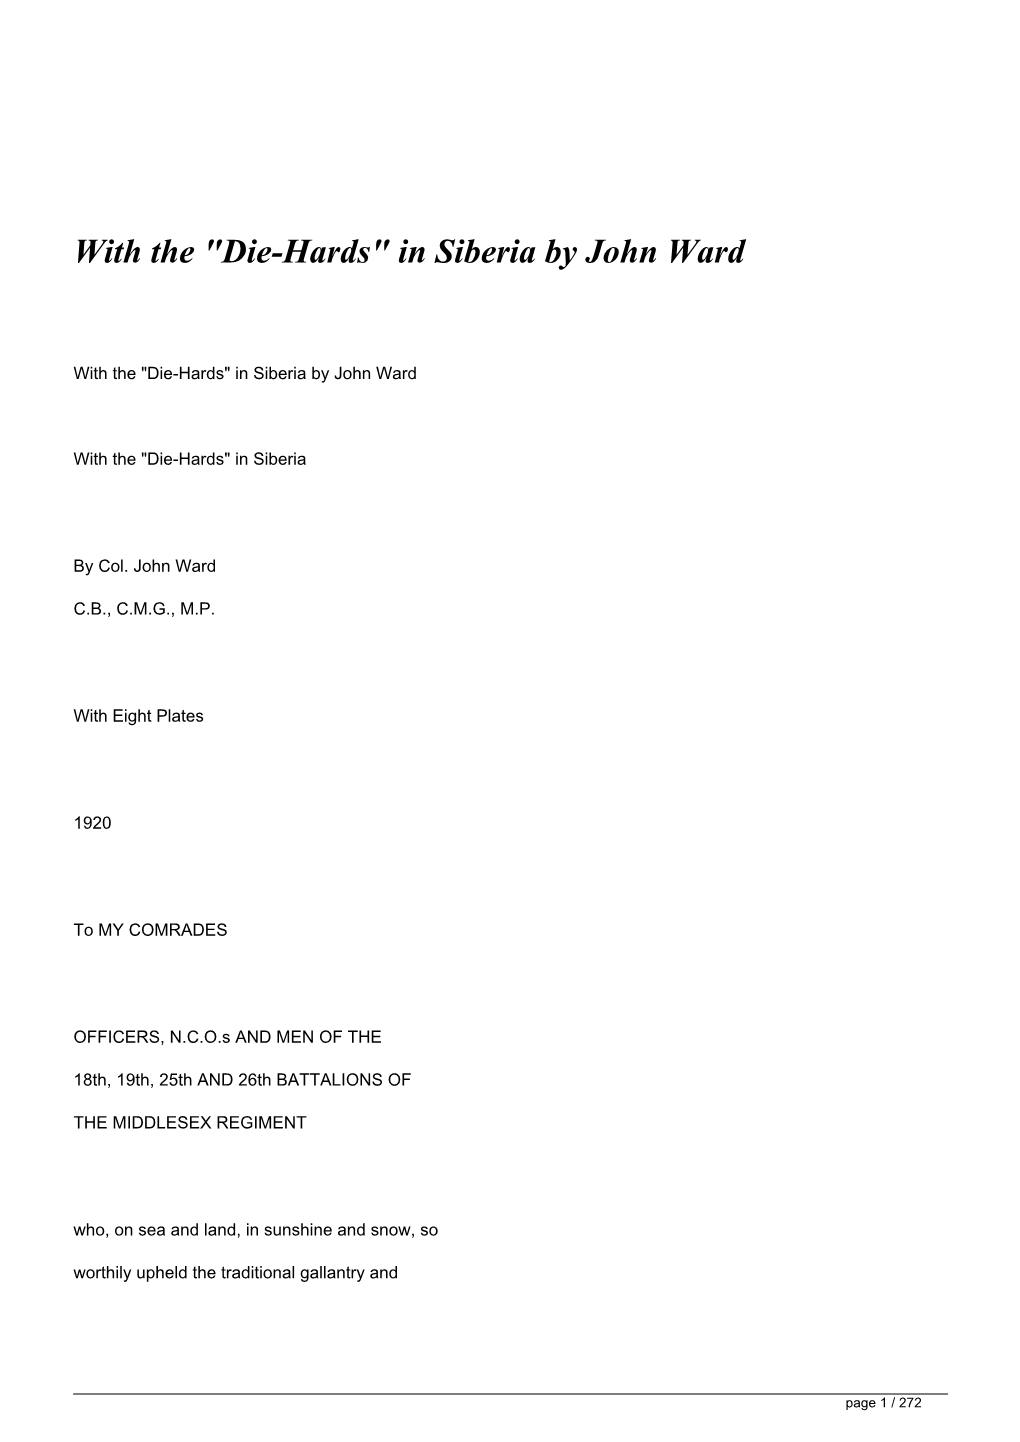 "Die-Hards" in Siberia by John Ward&lt;/H1&gt;